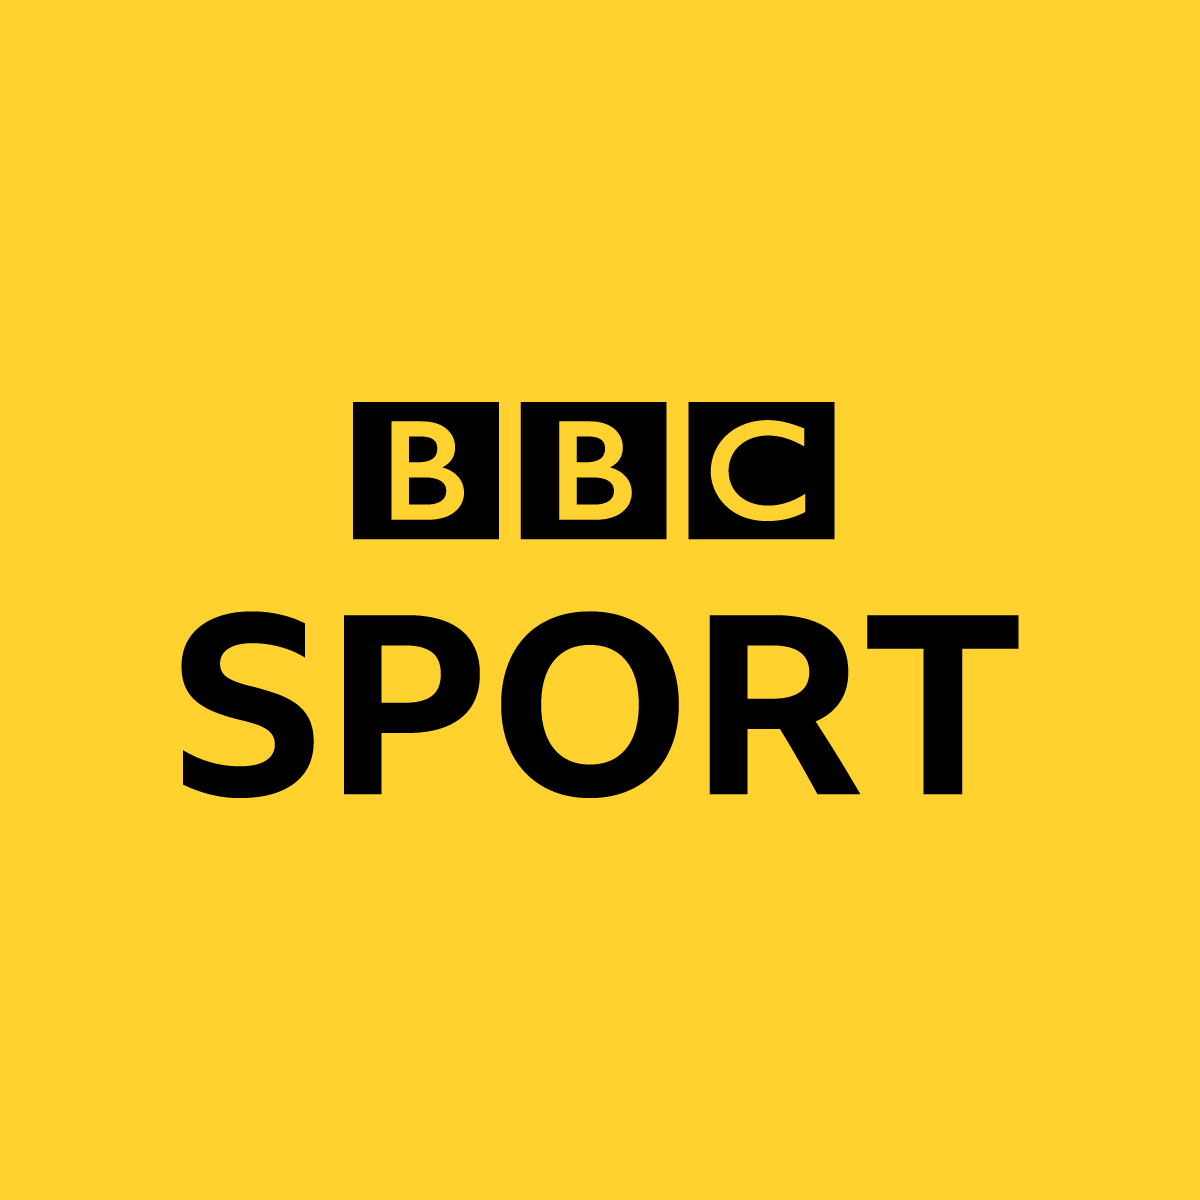 Президент МПК Эндрю Парсонс в интервью BBC Sport говорит, что ни одна страна не пропустит перенесенные Паралимпийские игры в Токио по финансовым причинам